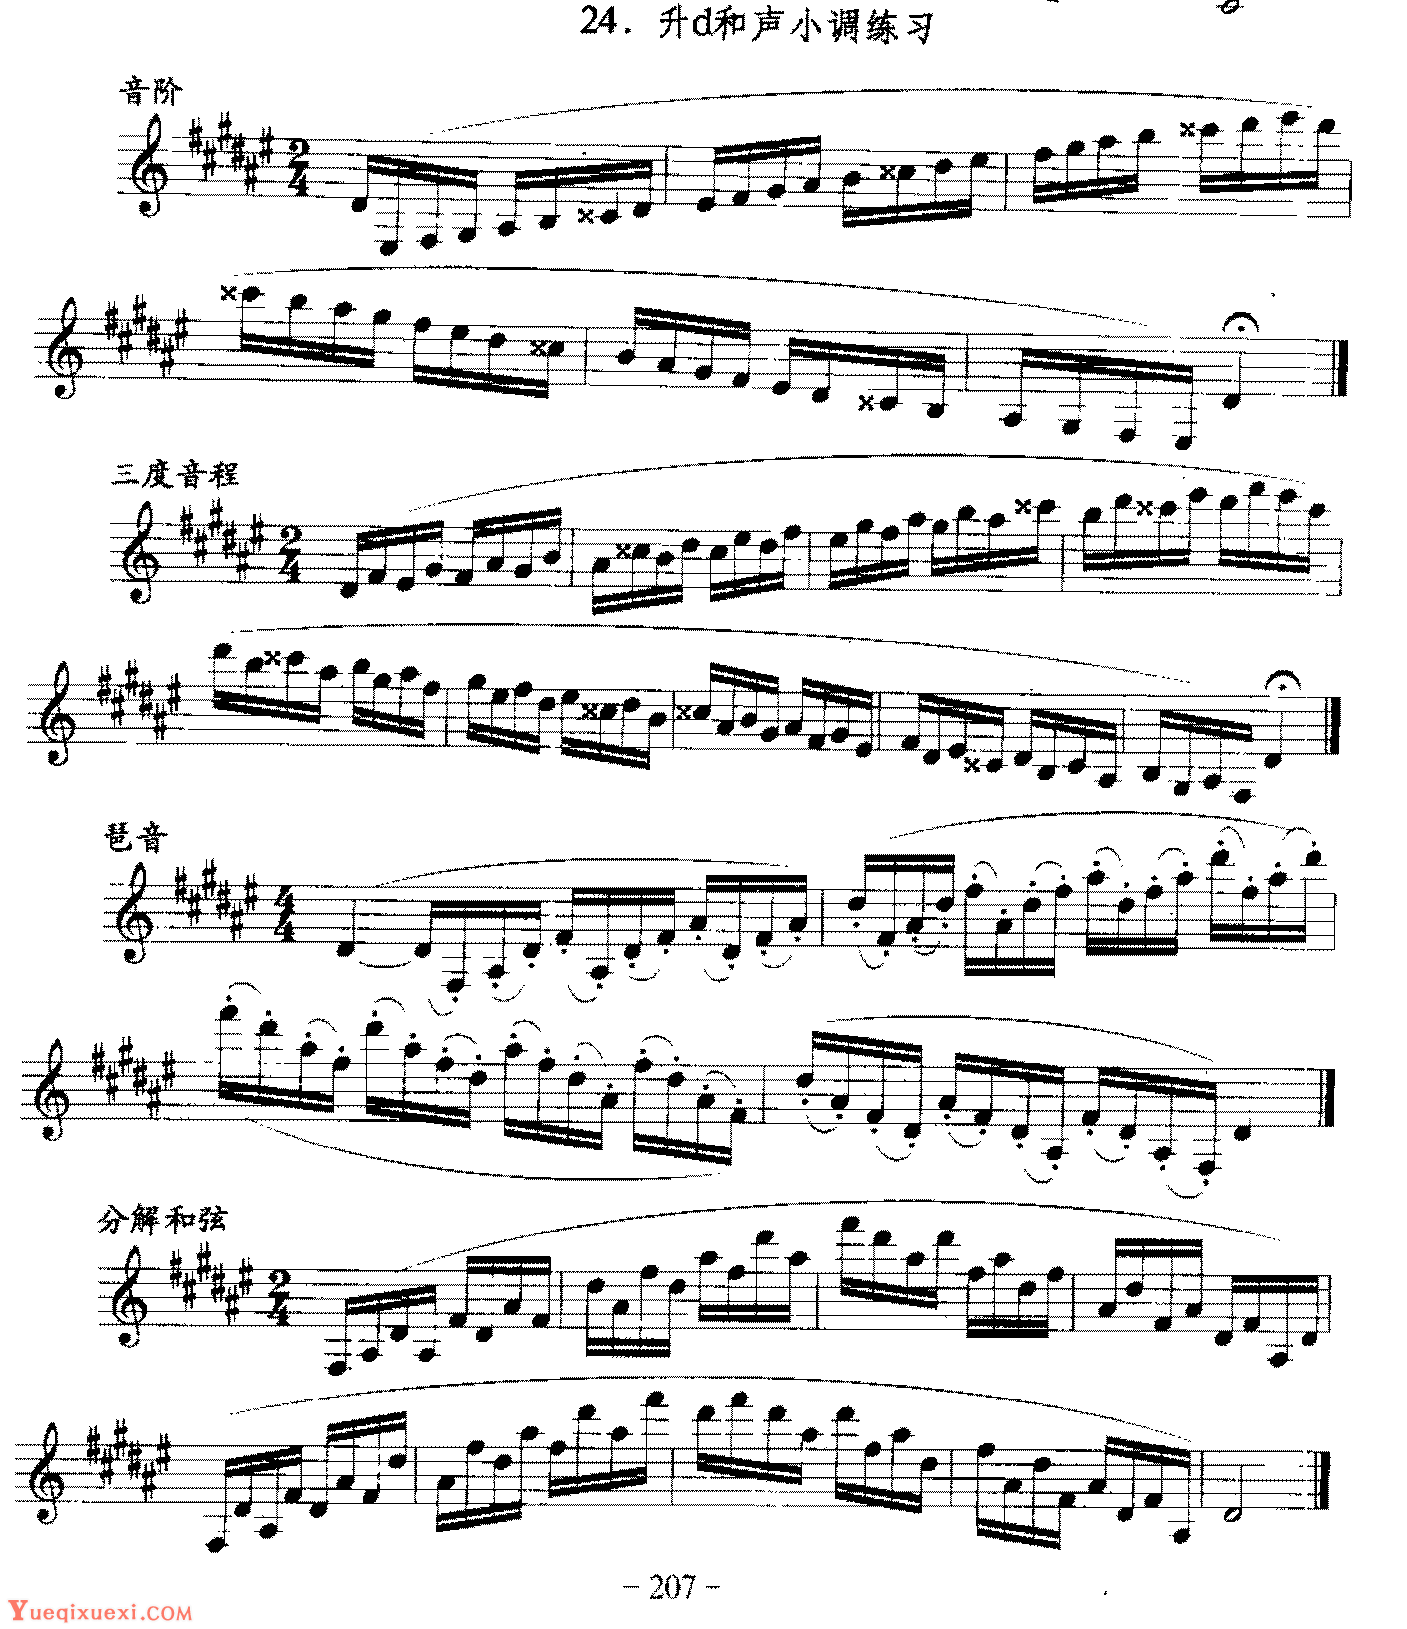 单簧管日常基础技术练习曲《升d和声小调练习》